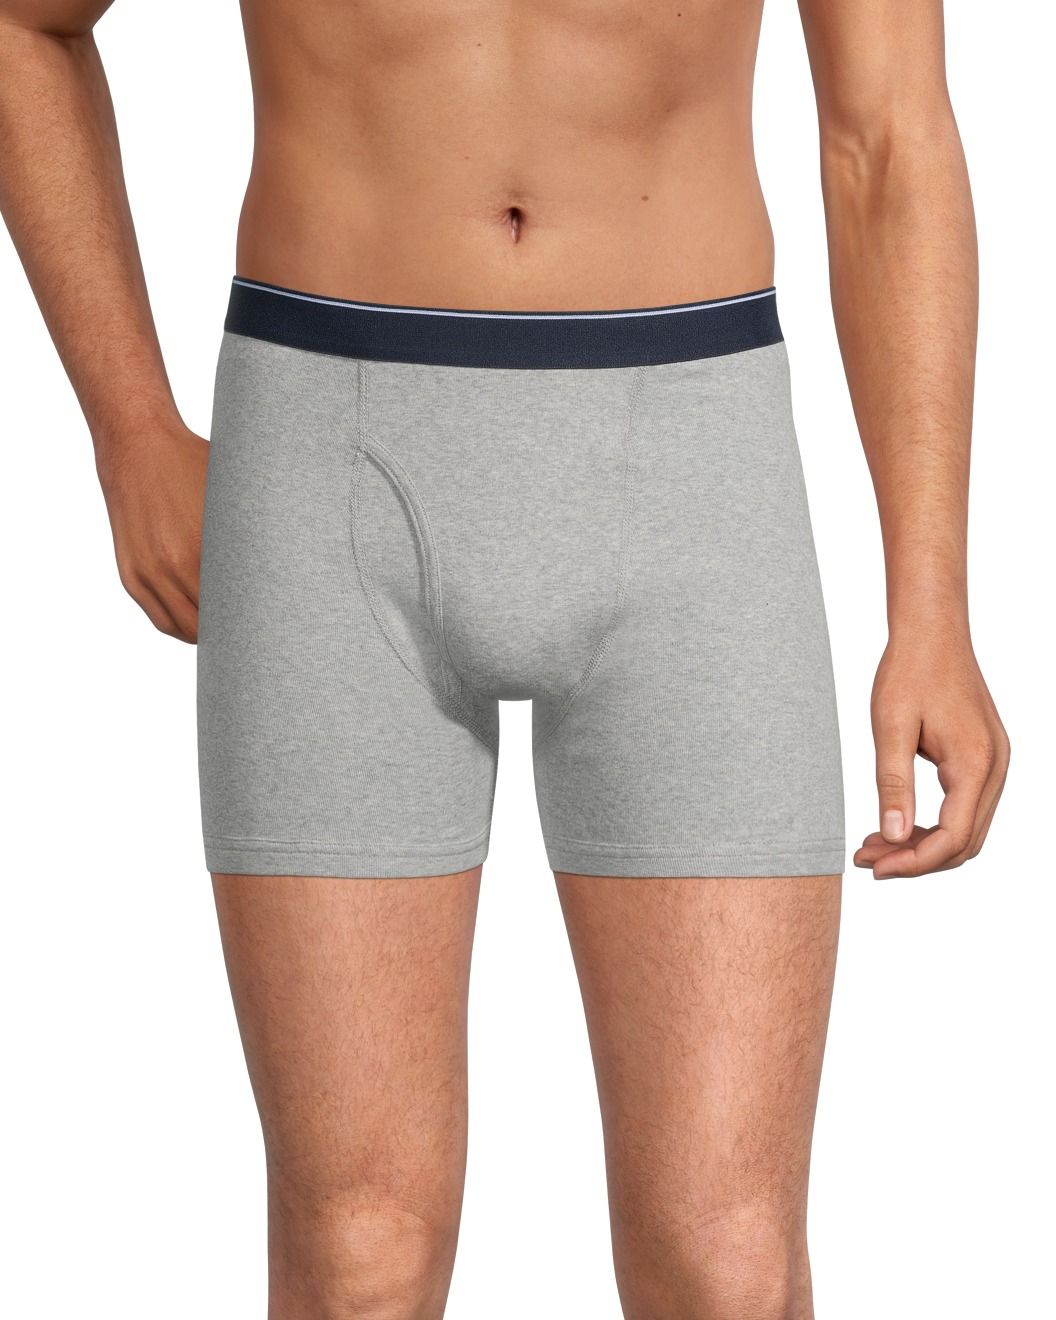 Denver Hayes Men's 3 Pack Status Boxer Briefs Underwear